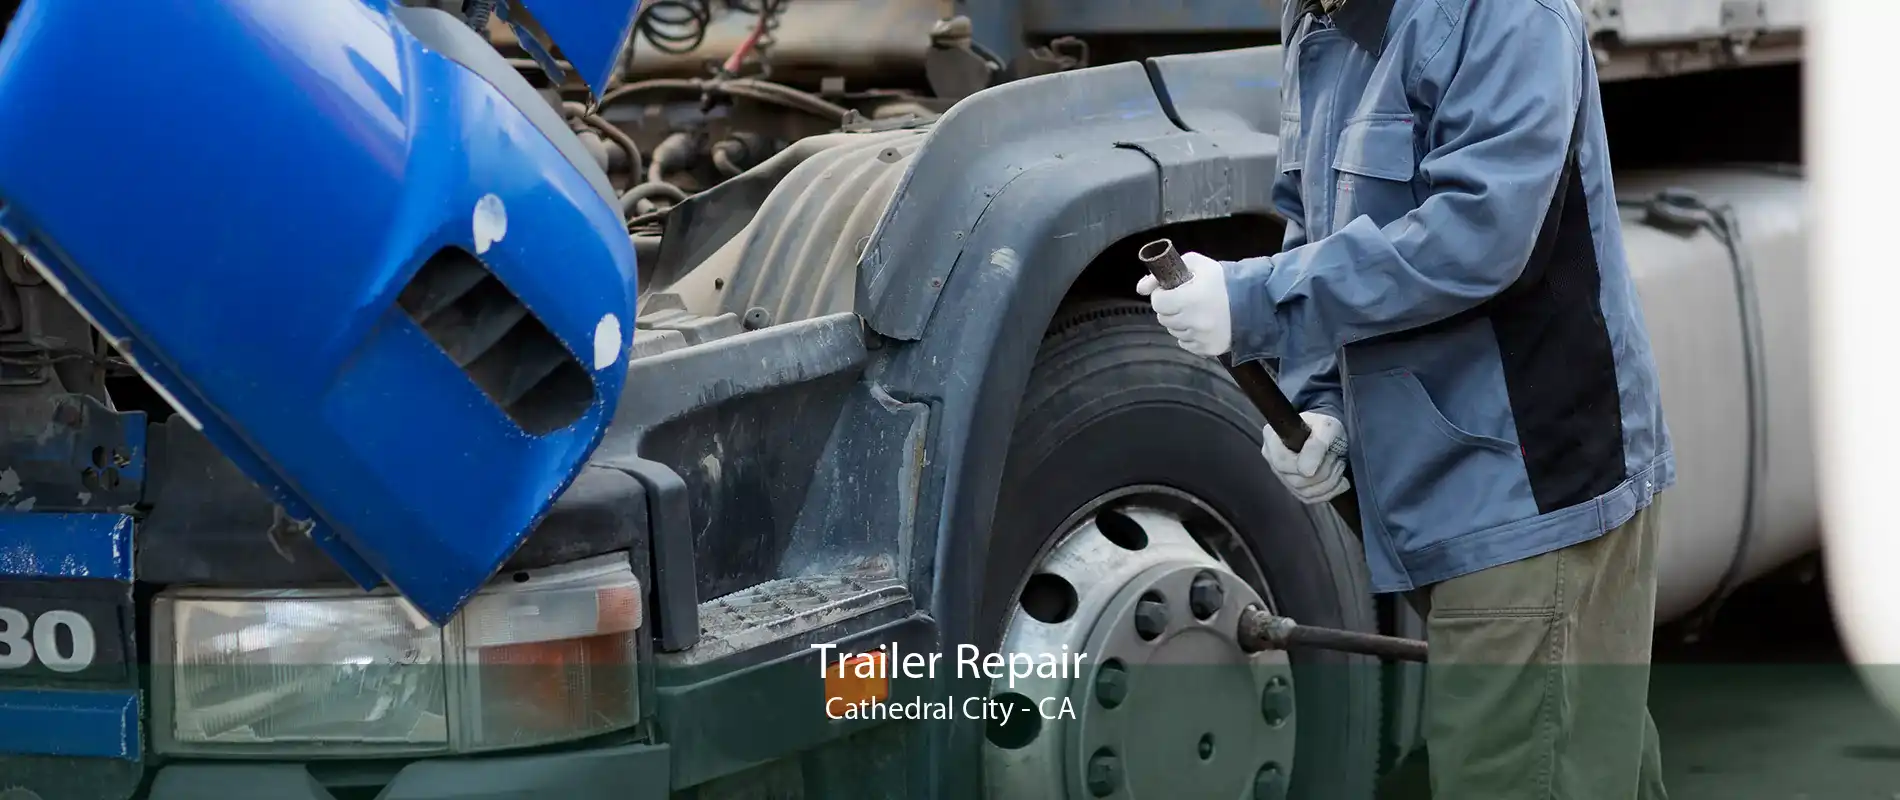 Trailer Repair Cathedral City - CA